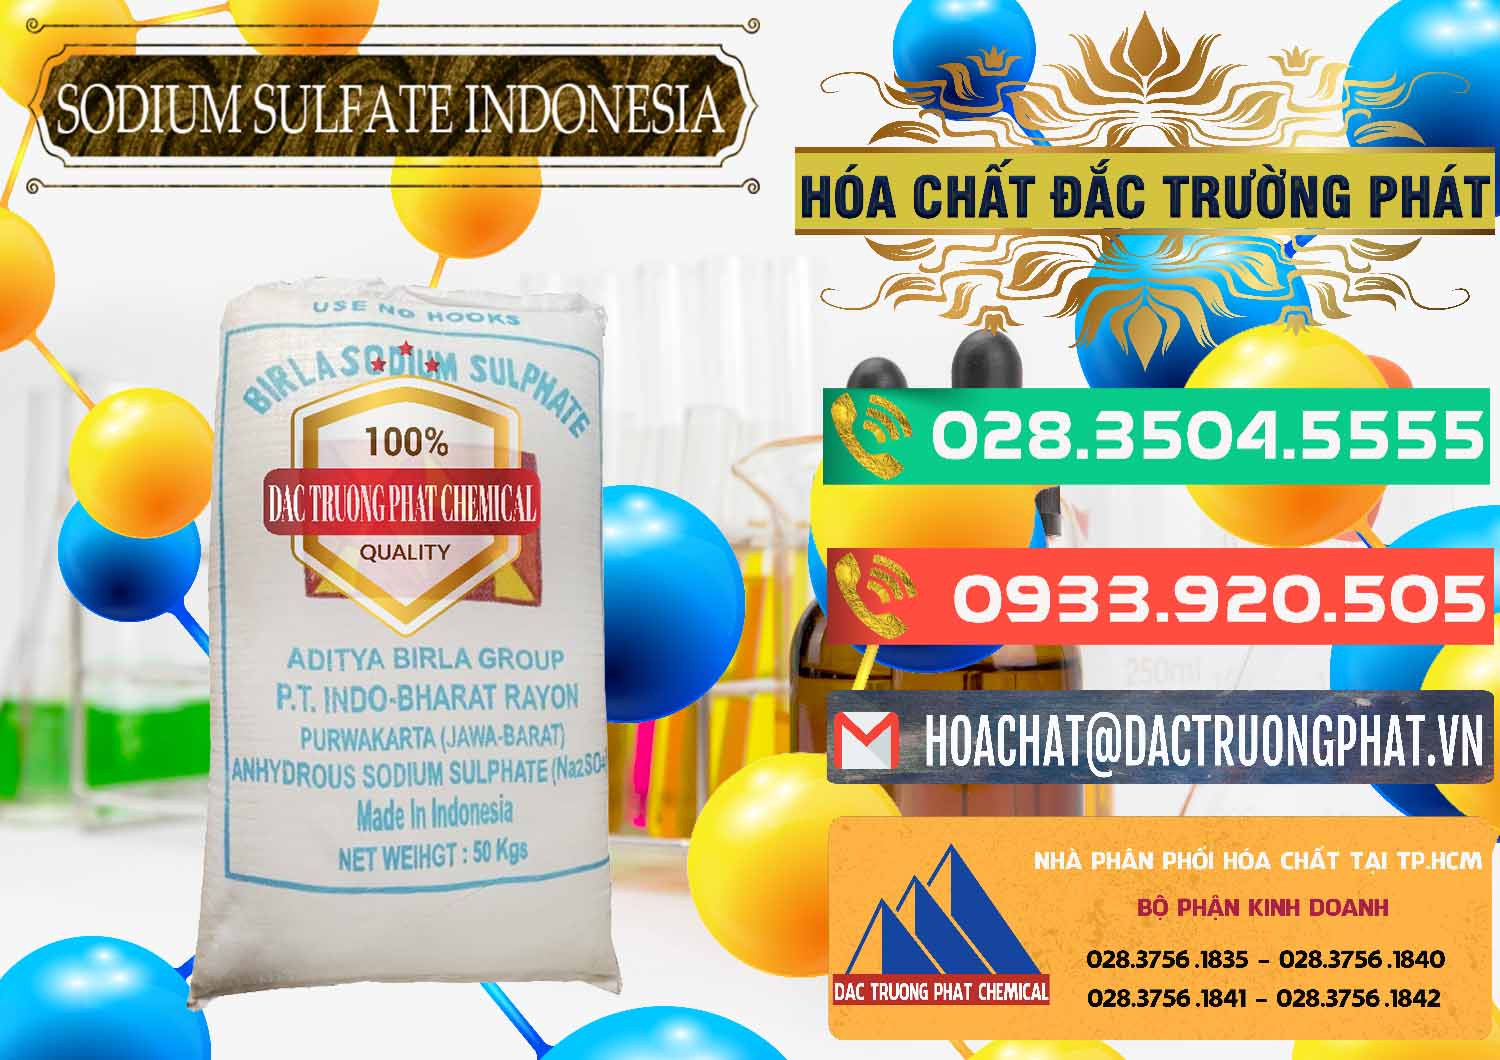 Cty chuyên bán - cung cấp Sodium Sulphate - Muối Sunfat Na2SO4 99% Indonesia - 0459 - Cty chuyên phân phối và bán hóa chất tại TP.HCM - congtyhoachat.com.vn